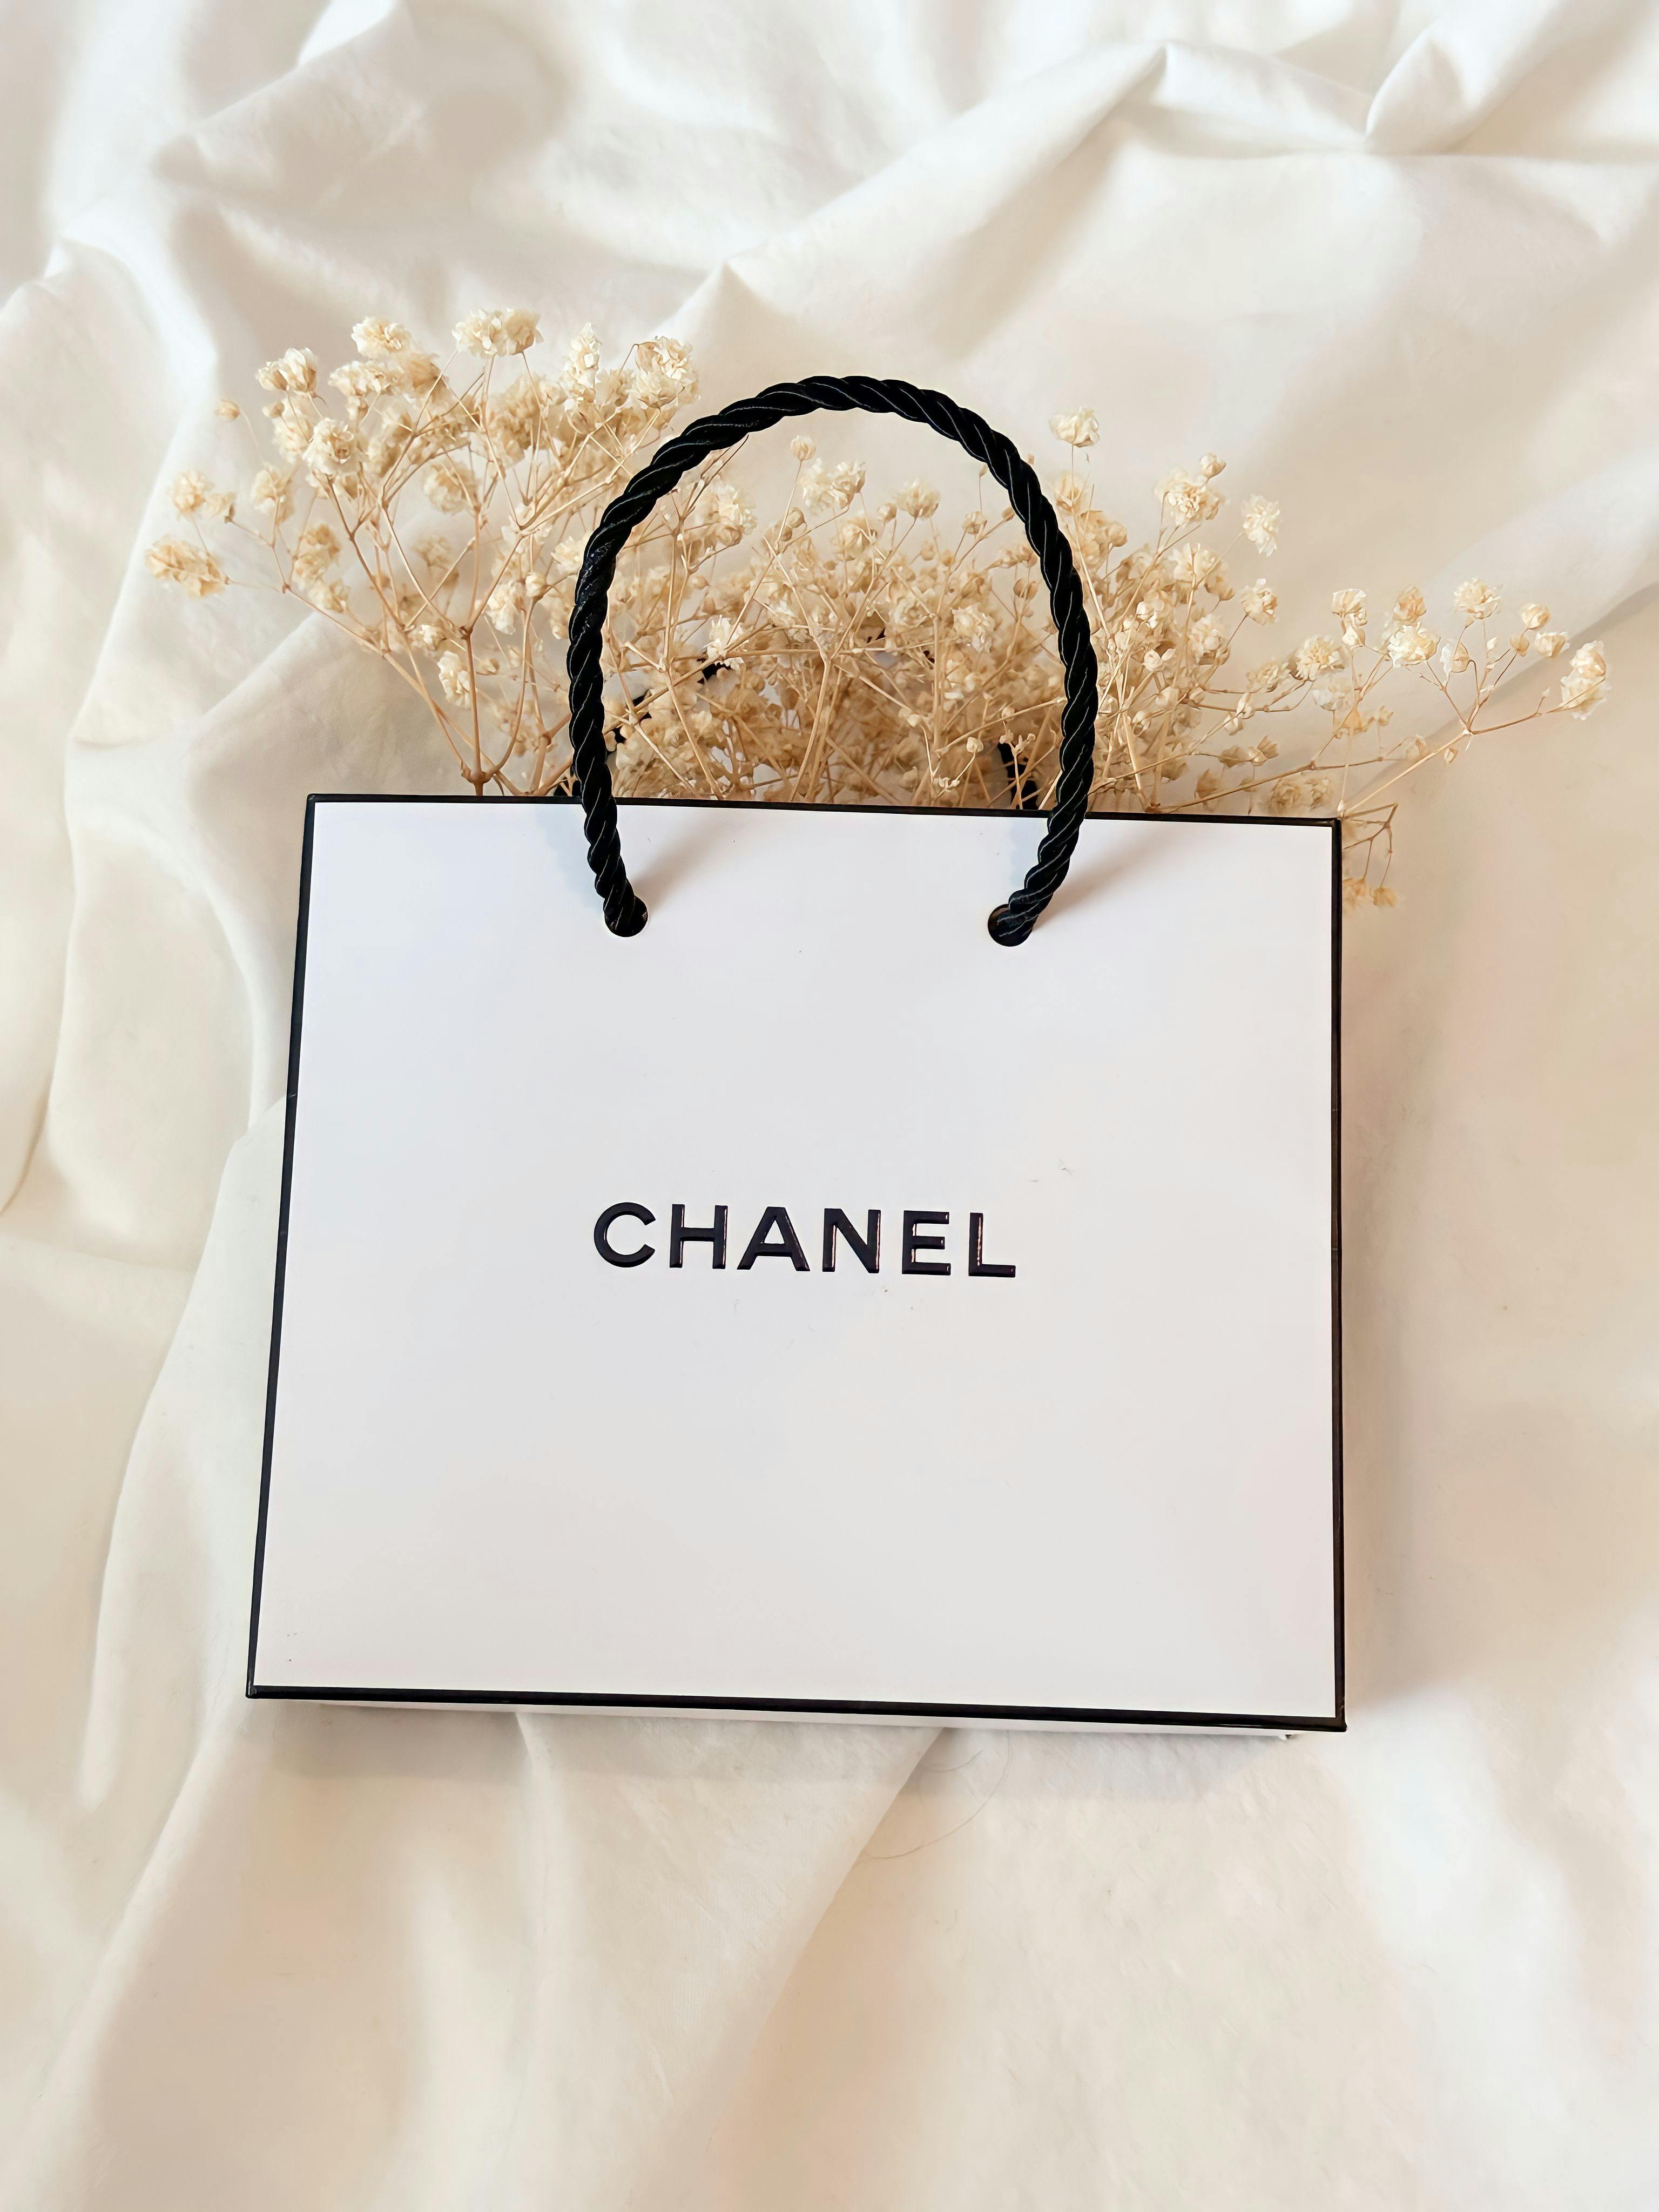 Inside Chanel's digital strategy